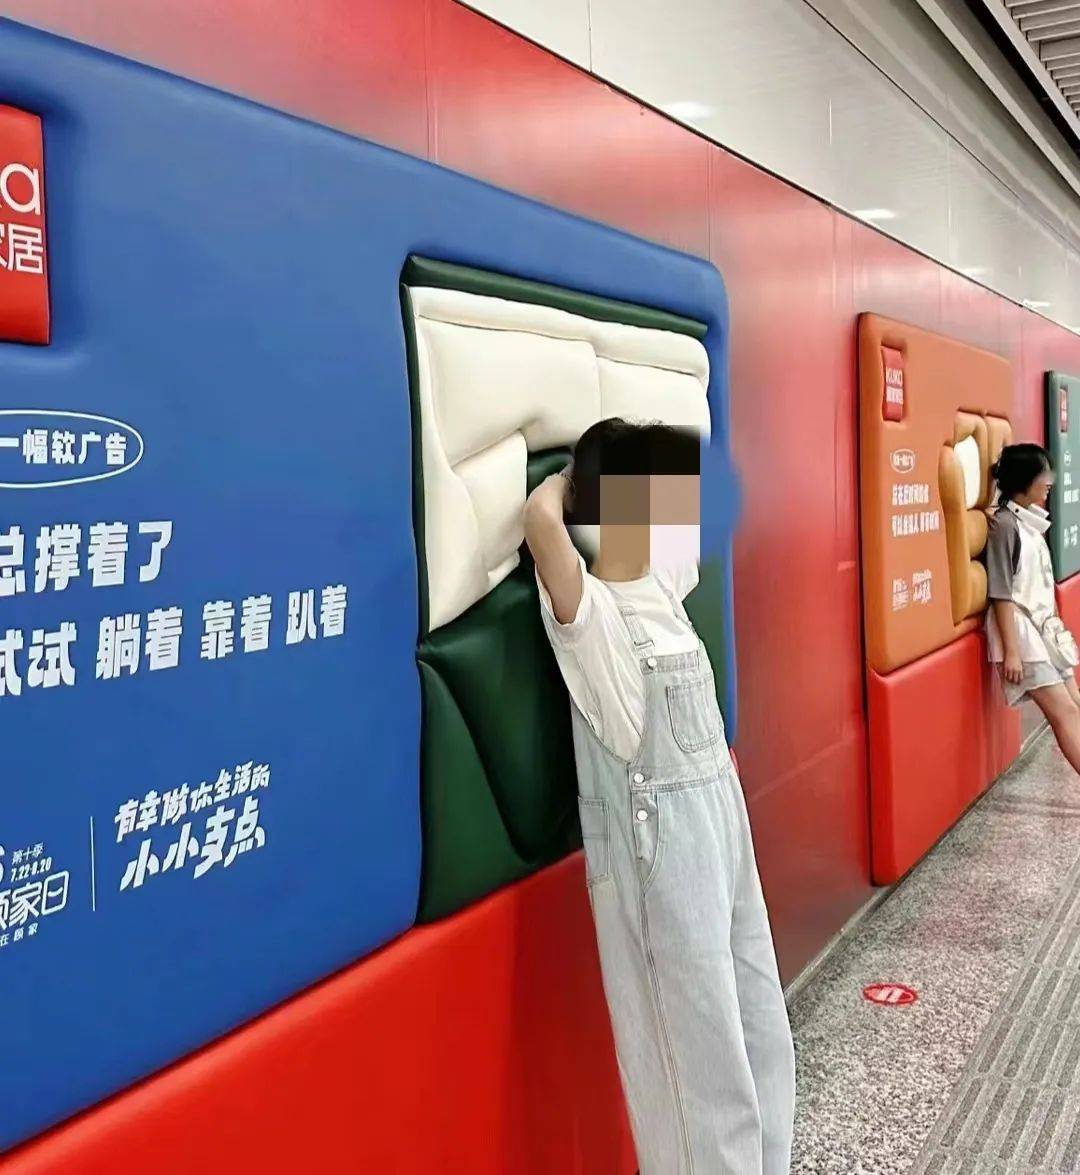 地铁广告臊得脸红，随机尬死一个路人……